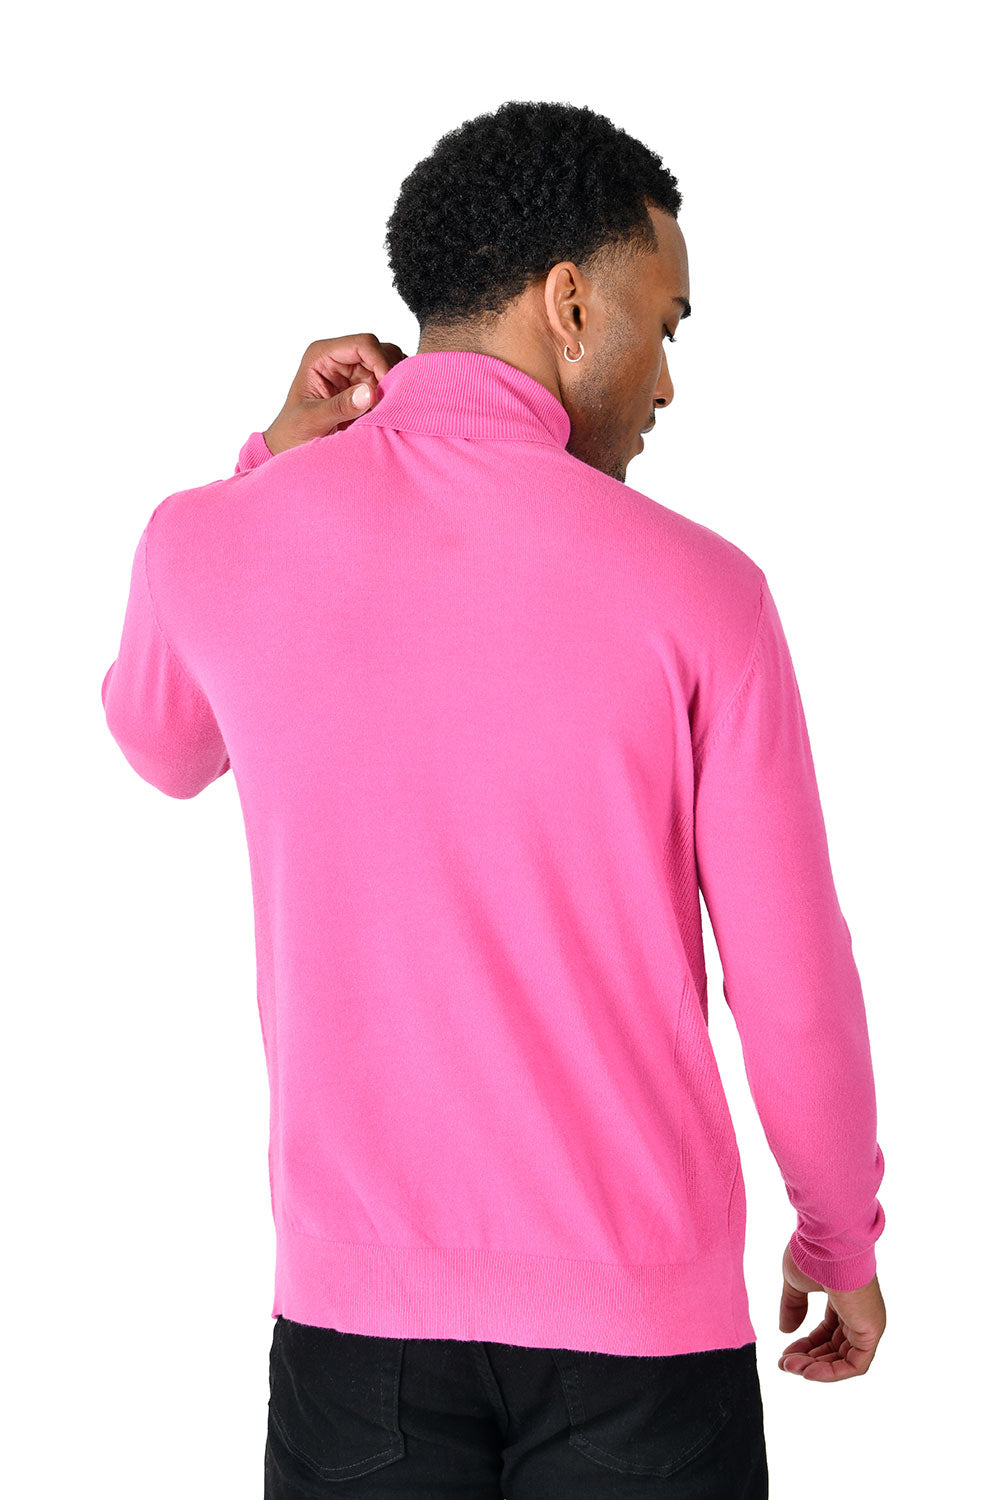 Men's Turtleneck Ribbed Solid Color Basic Sweater LS2100 Magenta